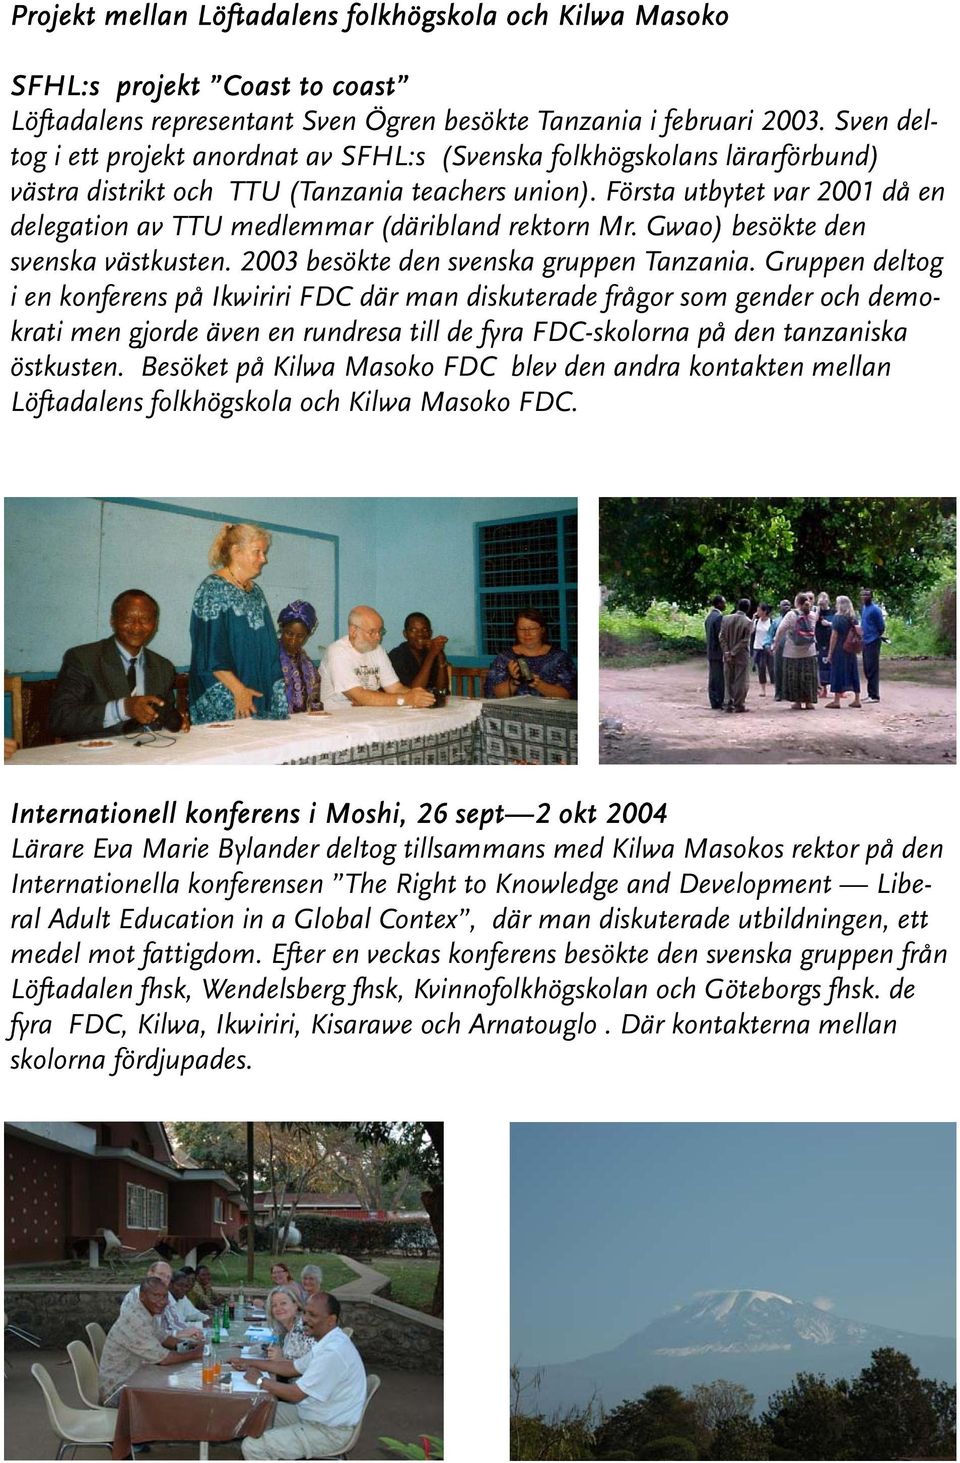 Första utbytet var 2001 då en delegation av TTU medlemmar (däribland rektorn Mr. Gwao) besökte den svenska västkusten. 2003 besökte den svenska gruppen Tanzania.